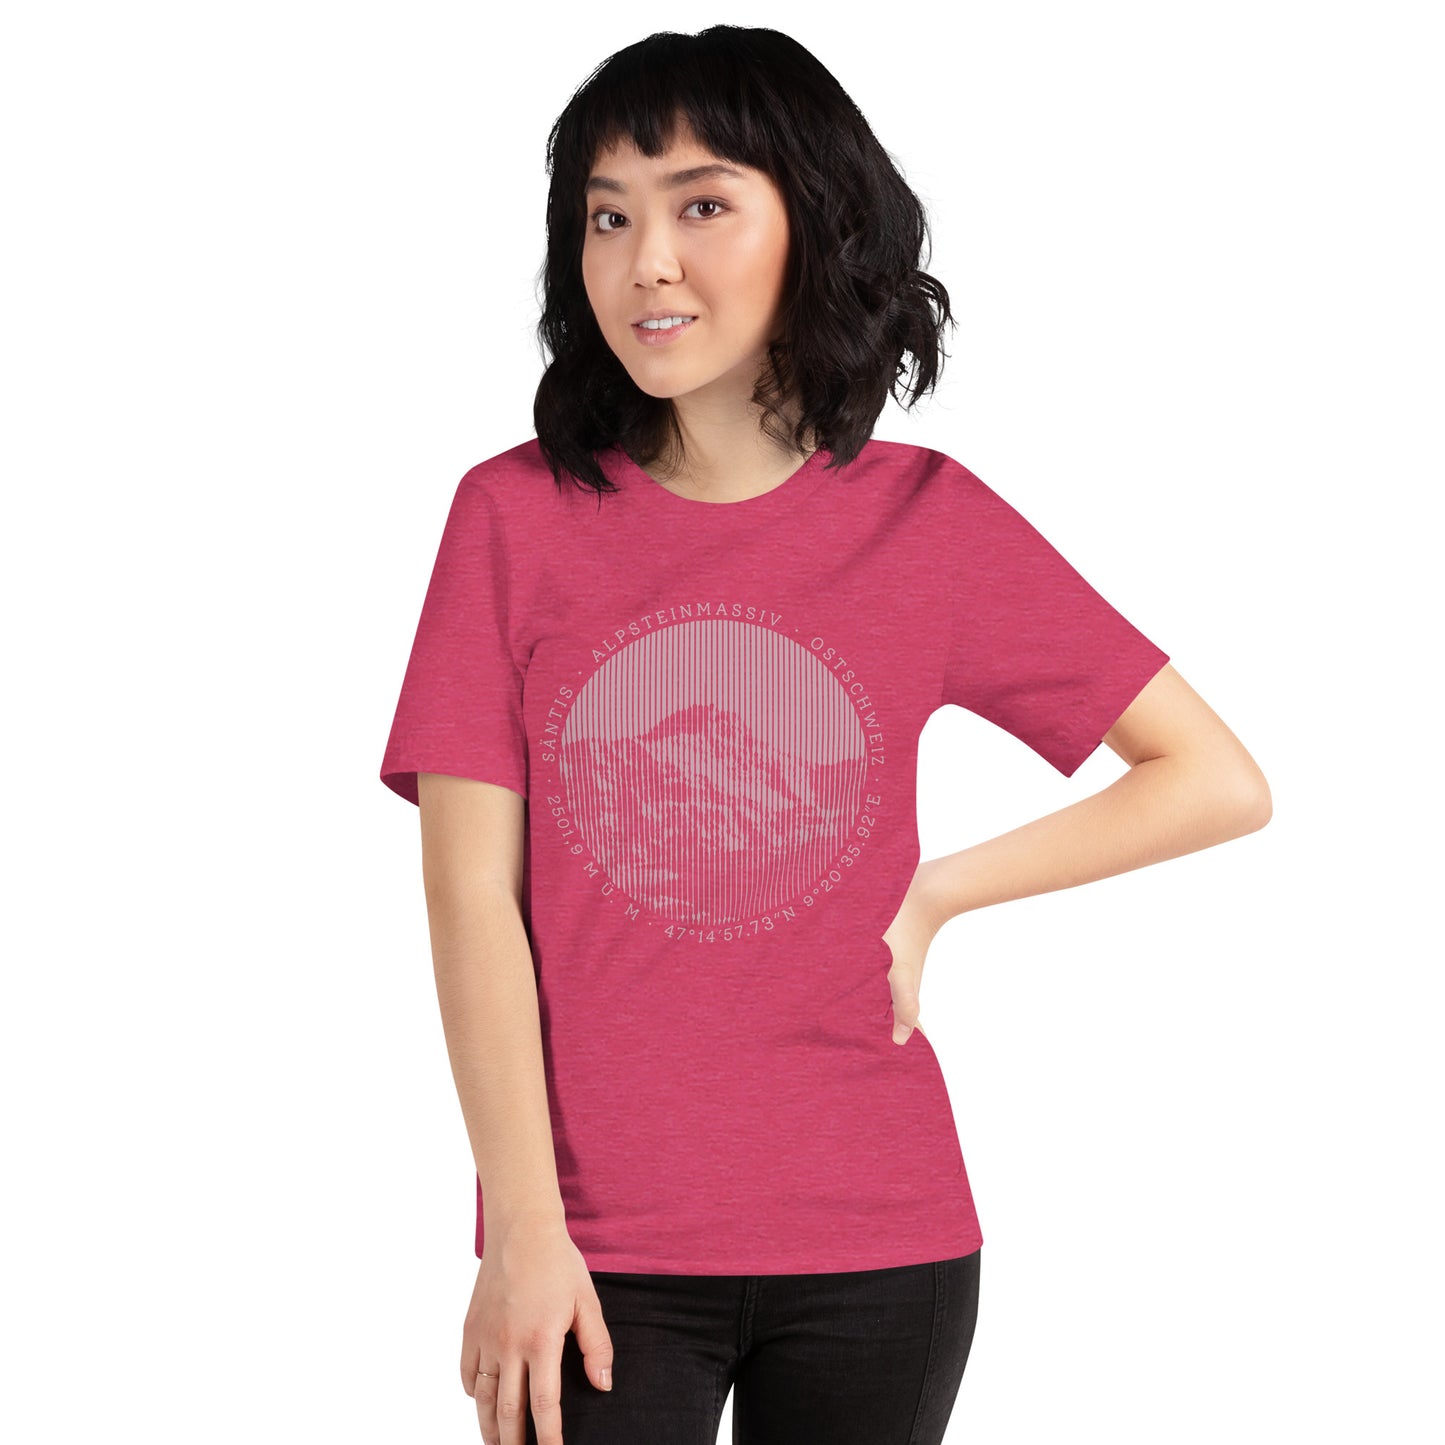 Diese Naturfreundin trägt ein rotes Damen T-Shirt von Vallada mit einem Aufdruck des Säntis-Gipfels. Dieses T-Shirt ist ein Ausdruck ihres Enthusiasmus für die Region des Alpsteins.